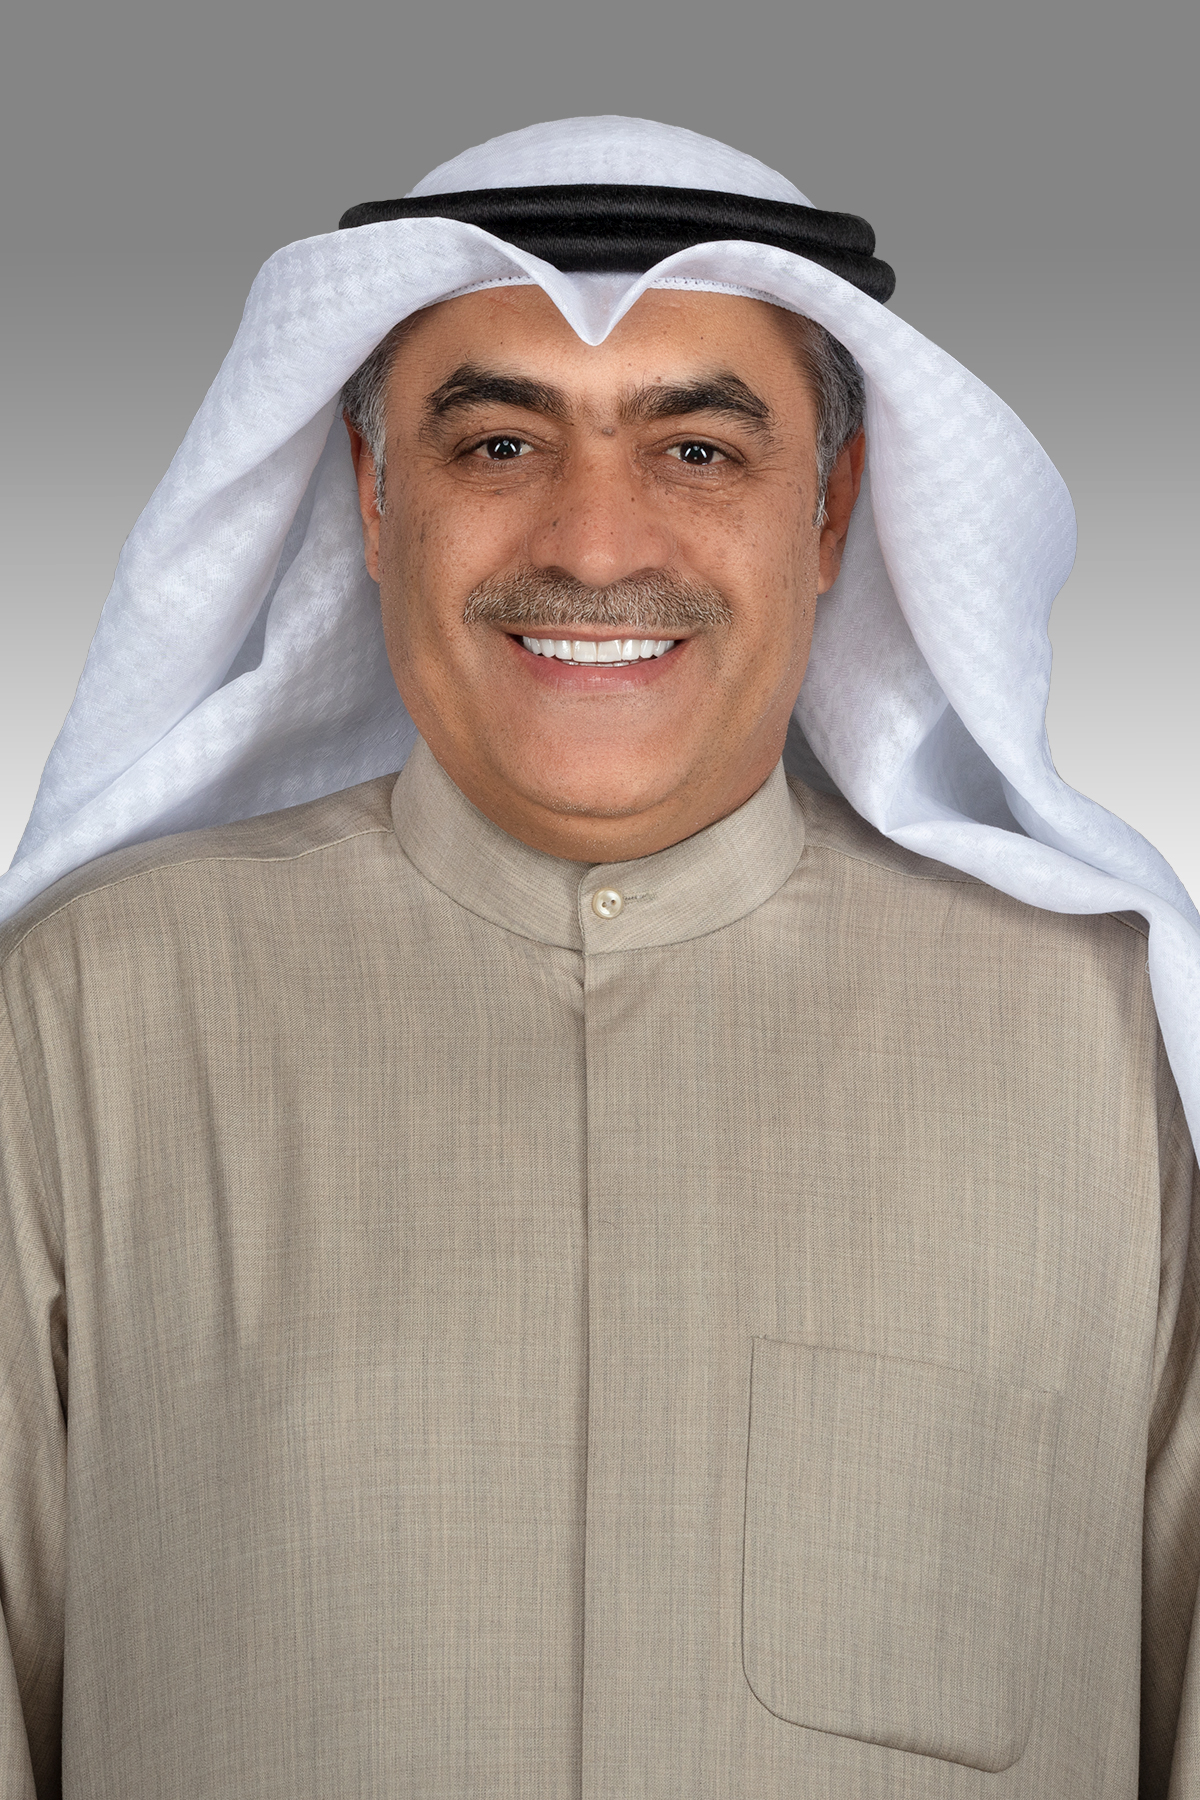 خالد العنزي يقترح تغيير اسم (مؤسسة التقدم العلمي) إلى مؤسسة د. صالح العجيري للتقدم العلمي